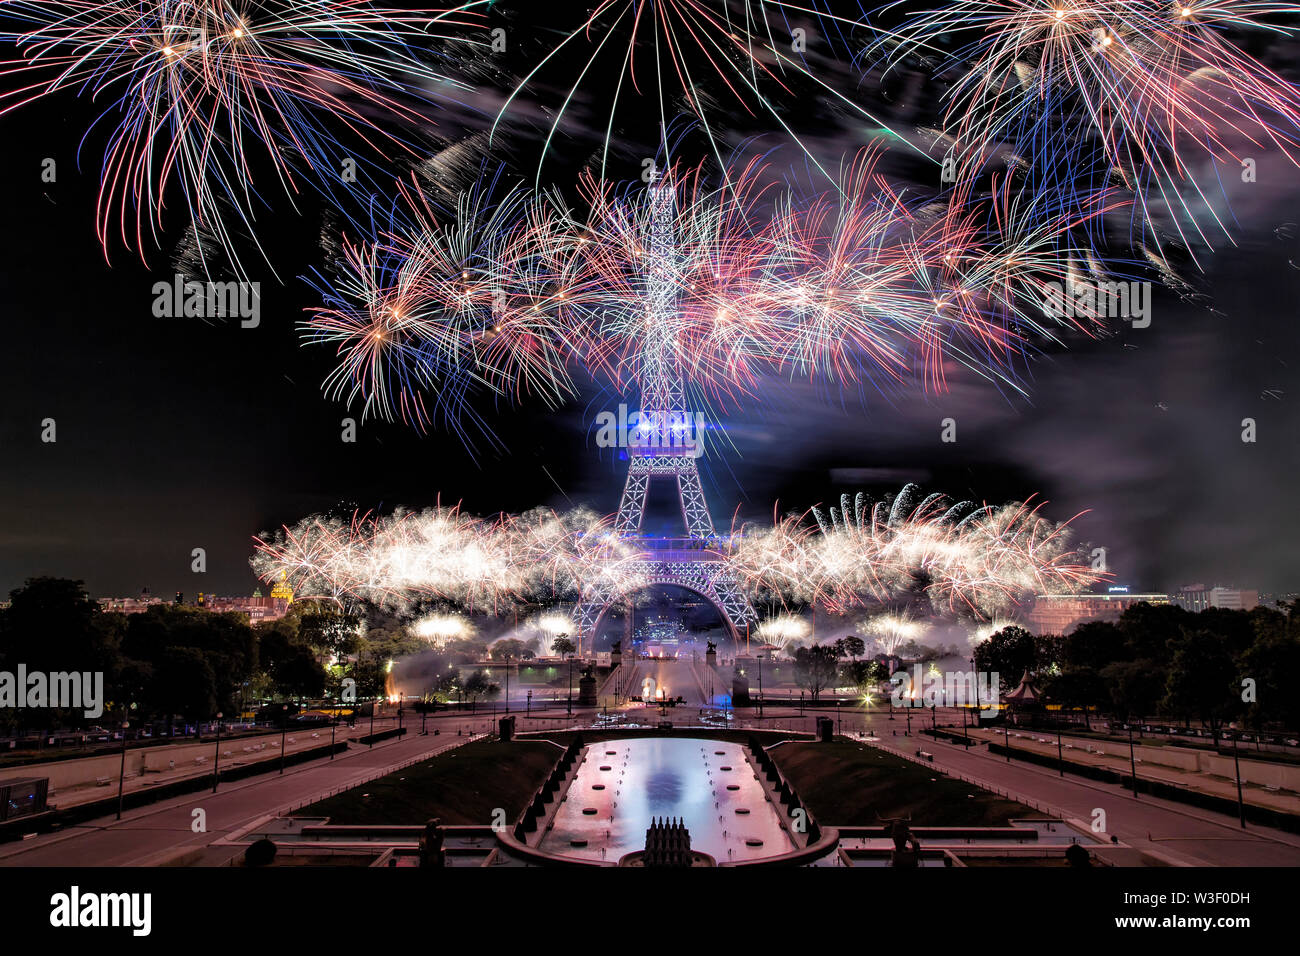 Paris, France. 14 juillet, 2019. Scène de nuit de feux d'artifice à la Tour Eiffel, dans la capitale française Paris, 14 juillet, 2019. Banque D'Images